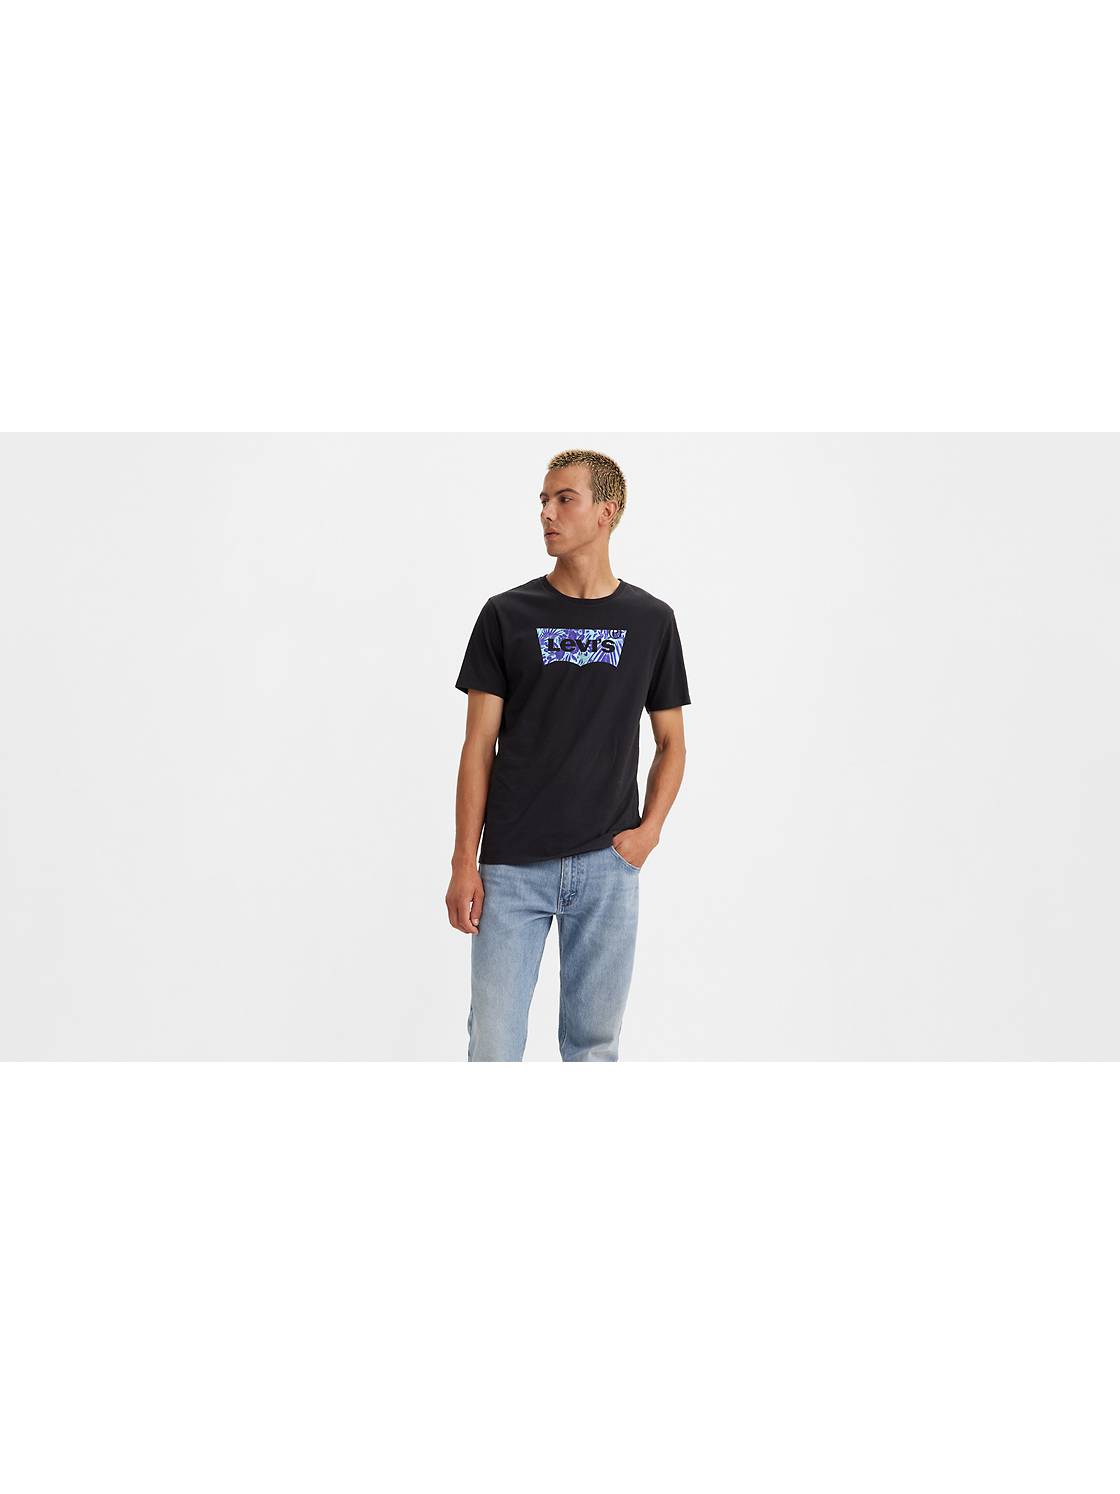 Men's Graphic T-Shirts: Shop Graphic Tees for Men | Levi's® US